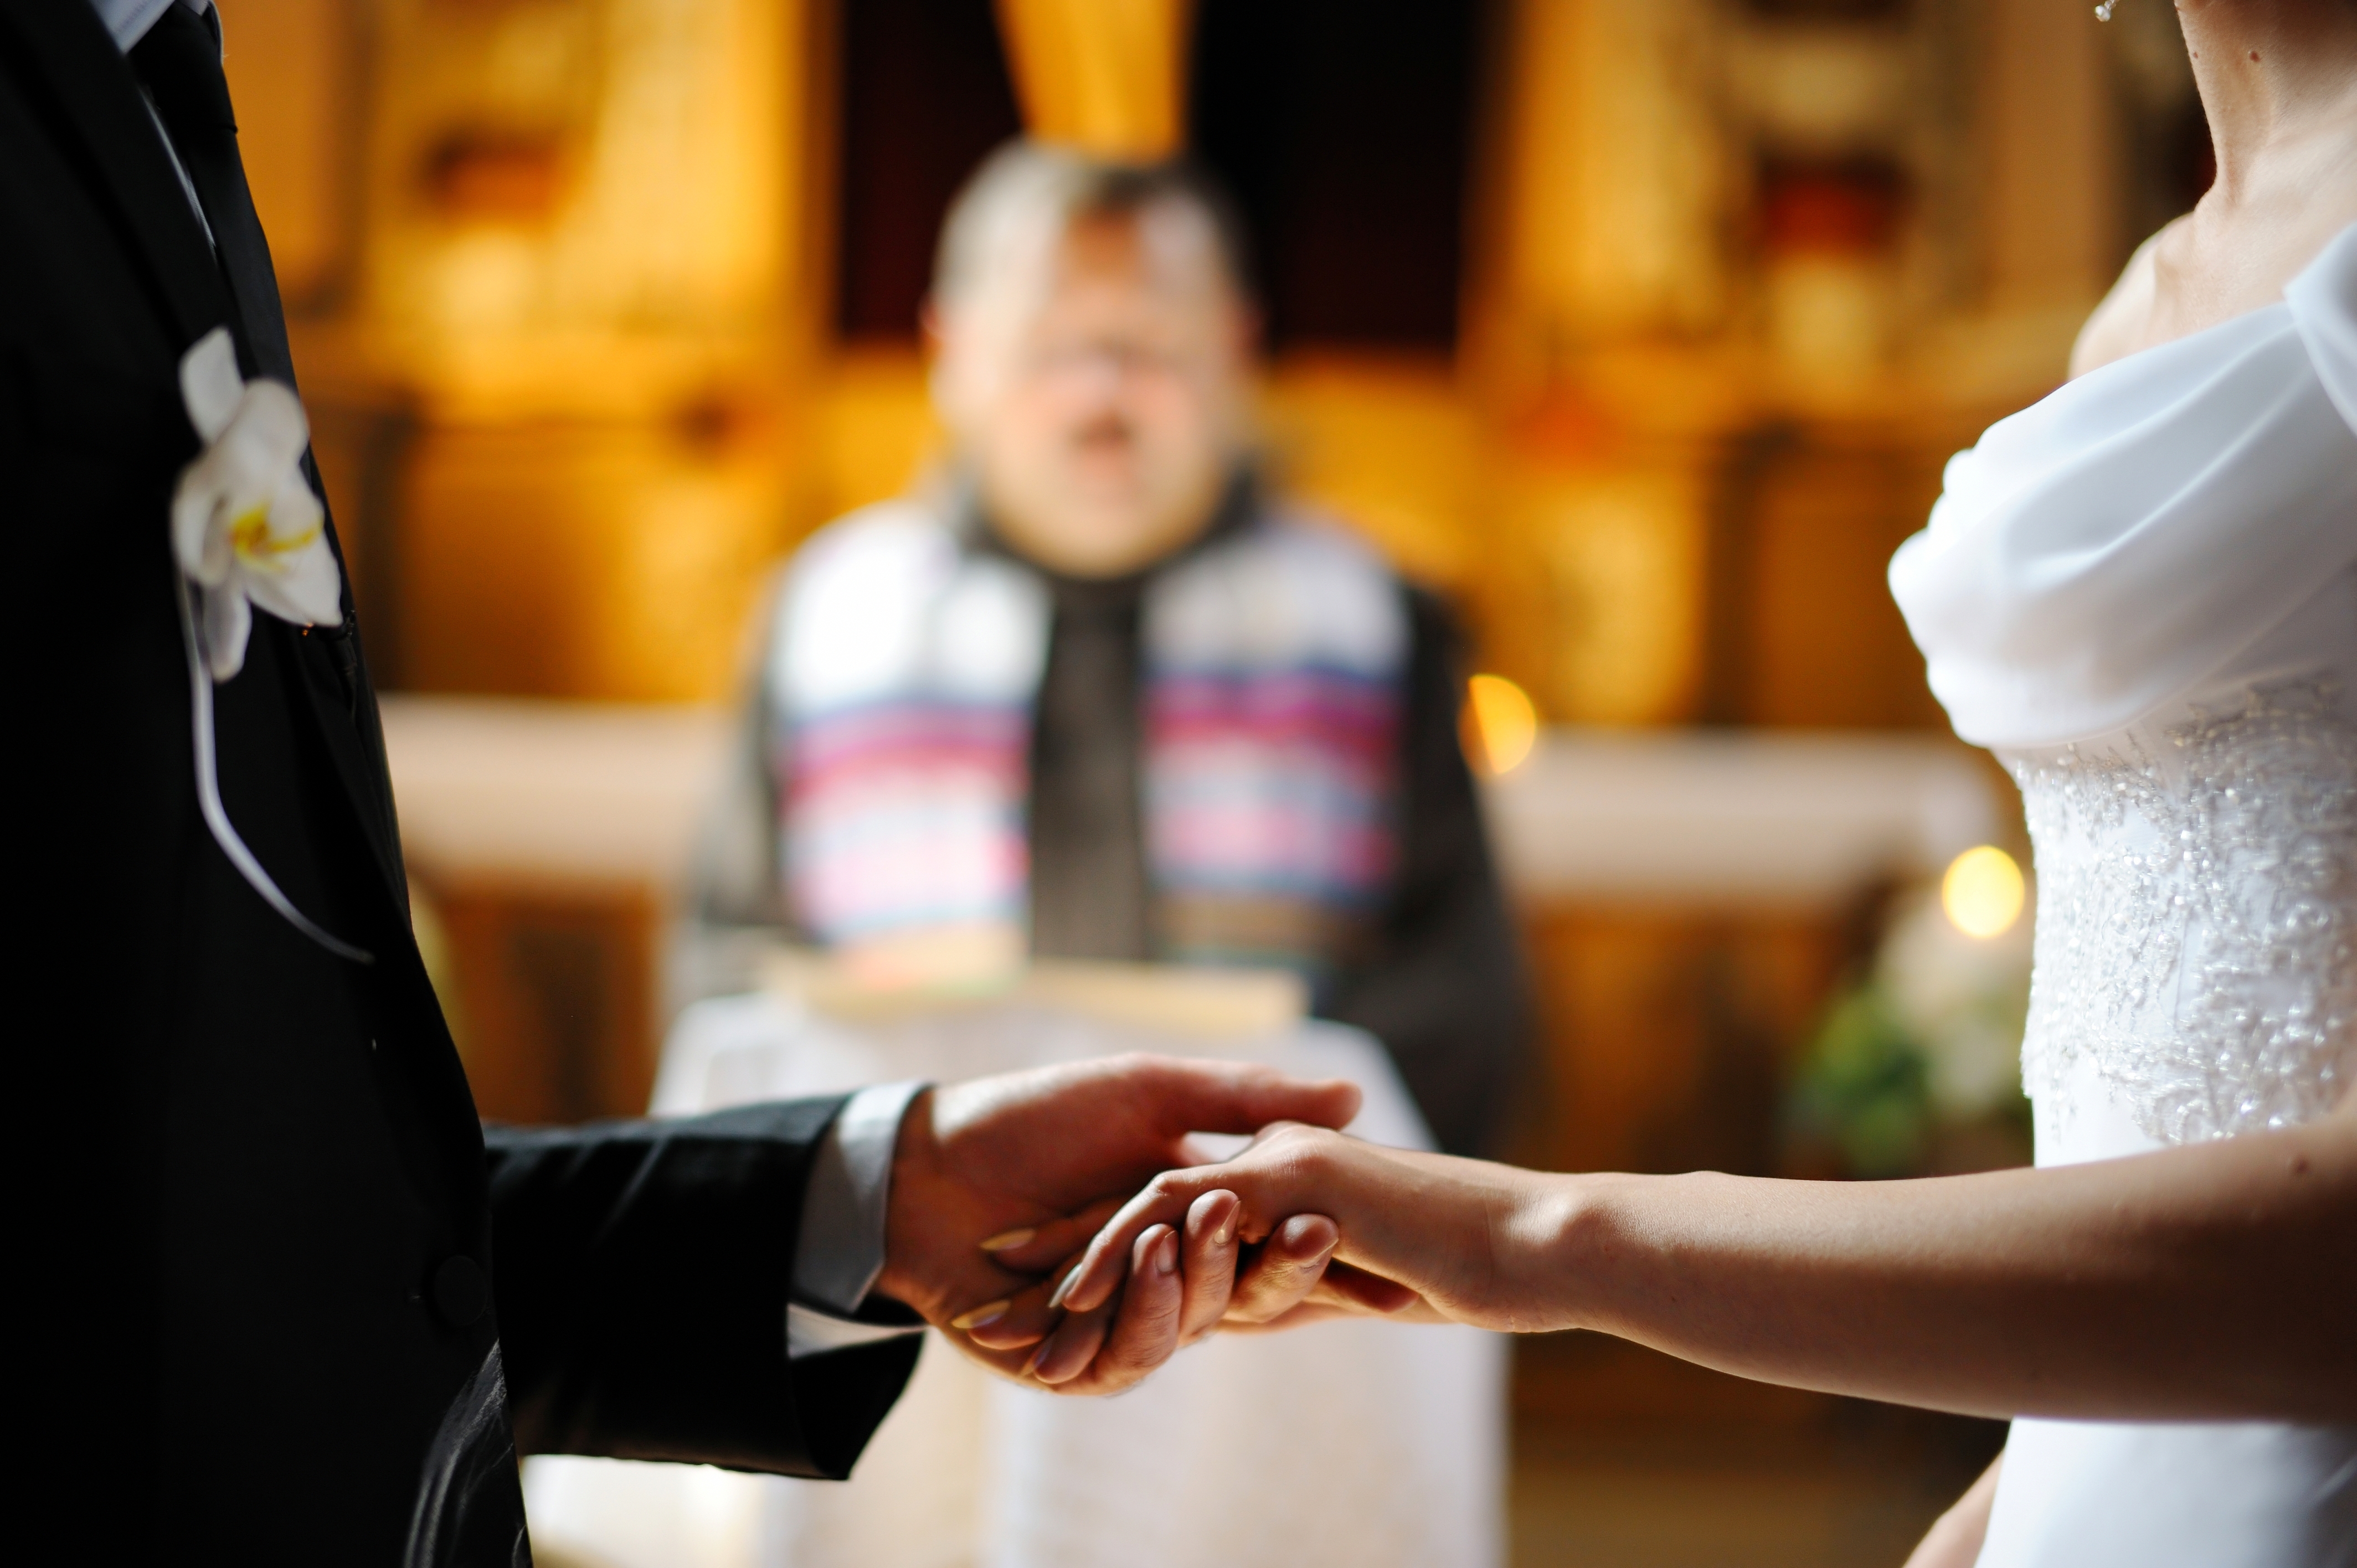 Une mariée et un marié se tenant la main pendant la cérémonie de mariage | Source : Shutterstock